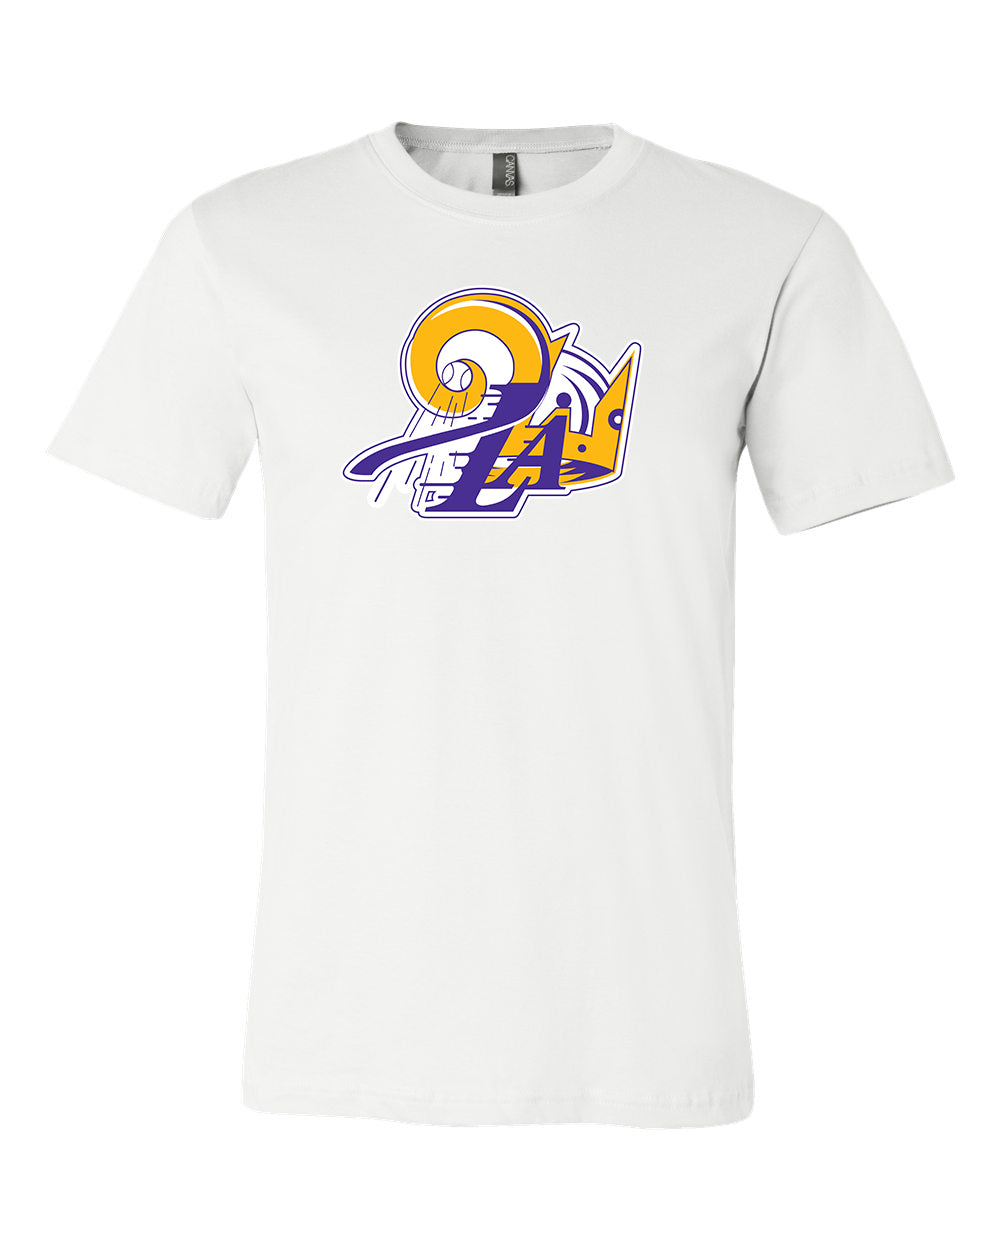 Los Angeles Dodgers Lakers Kings logo mashup shirt, hoodie